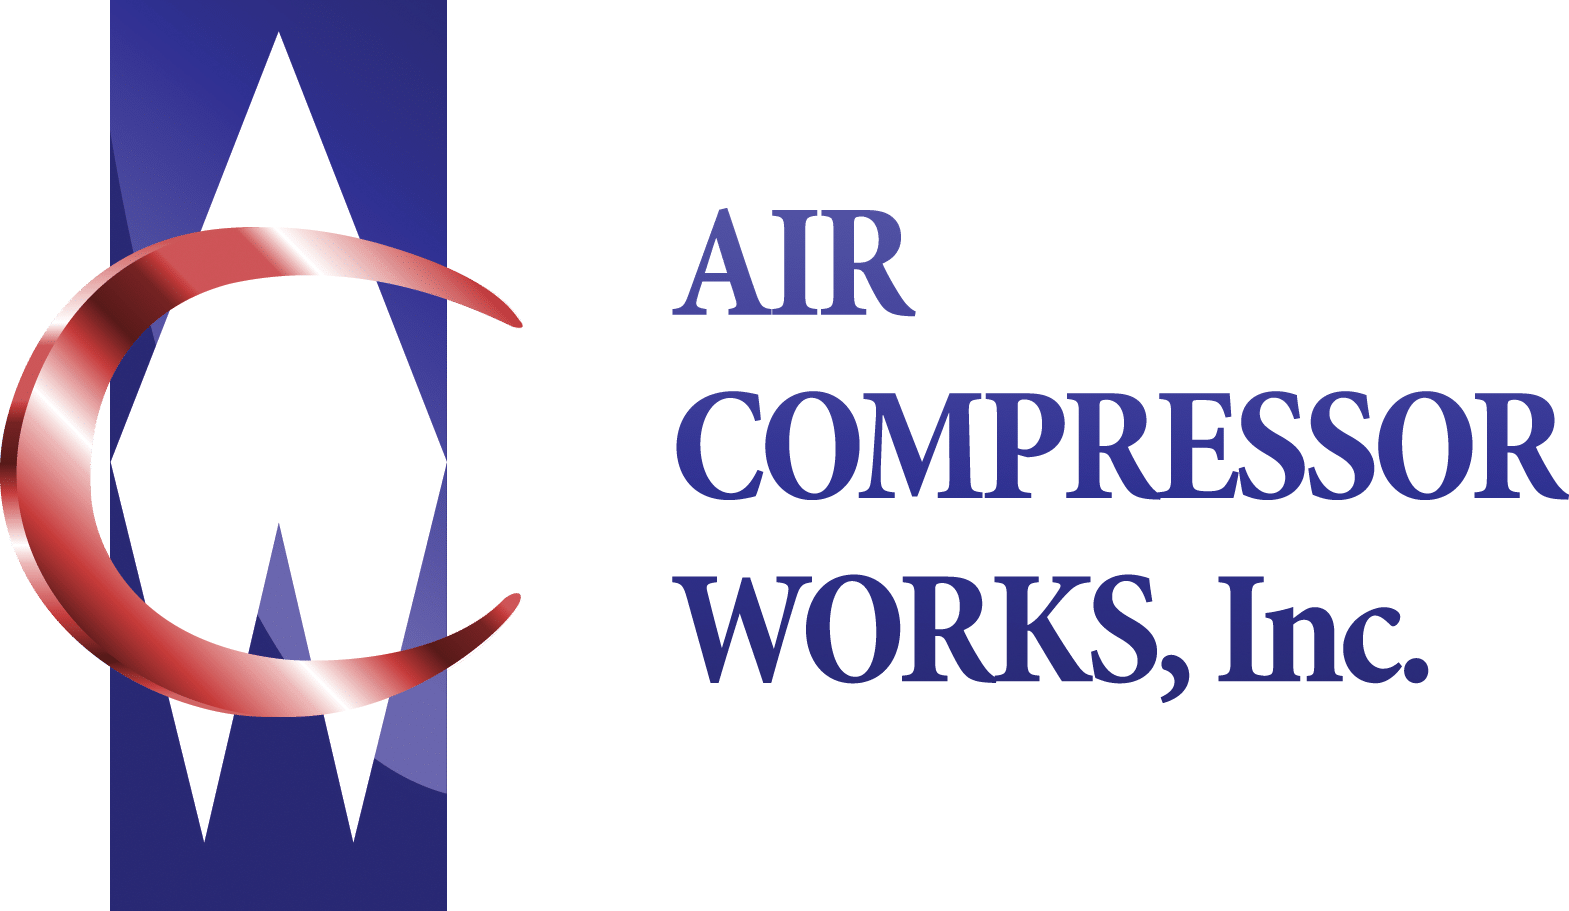 aircompressorworks.com